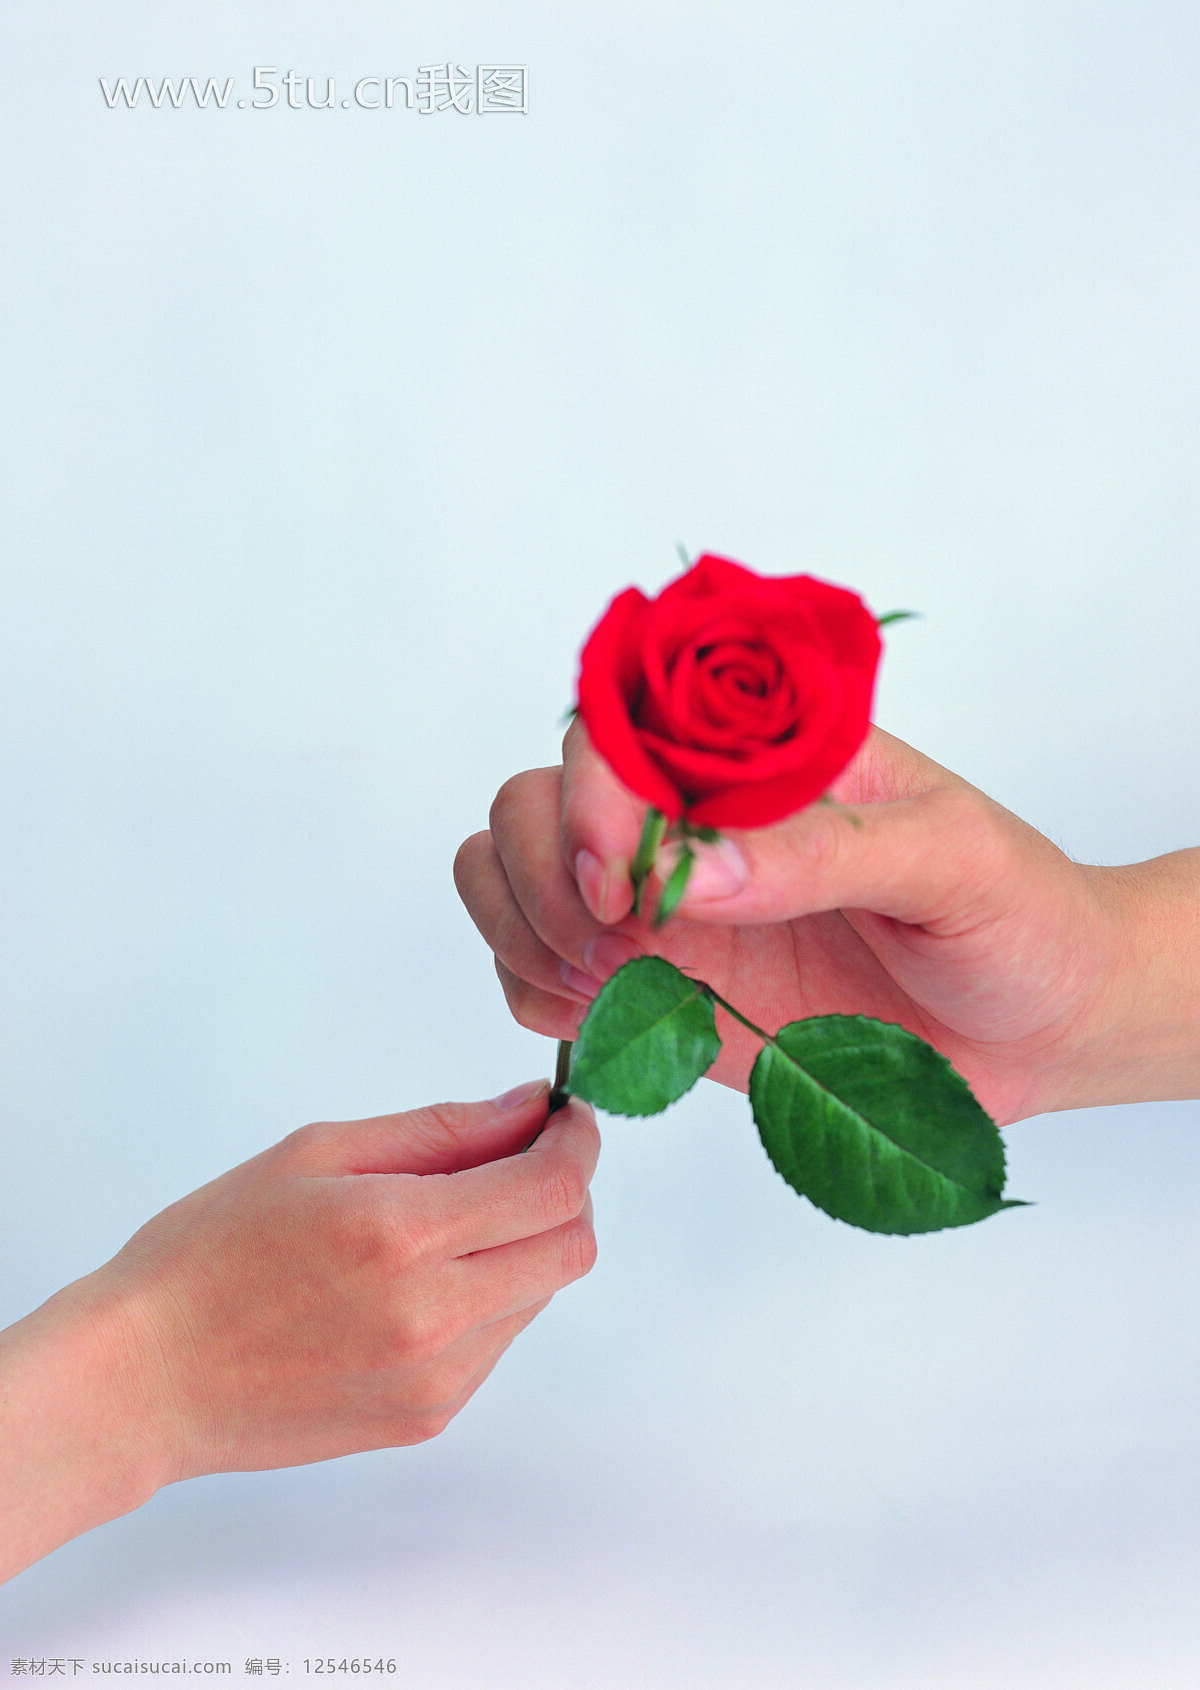 个人 手 传递 枝 红玫瑰 超大 高清 摄影图 生活素材 生活百科 图片库